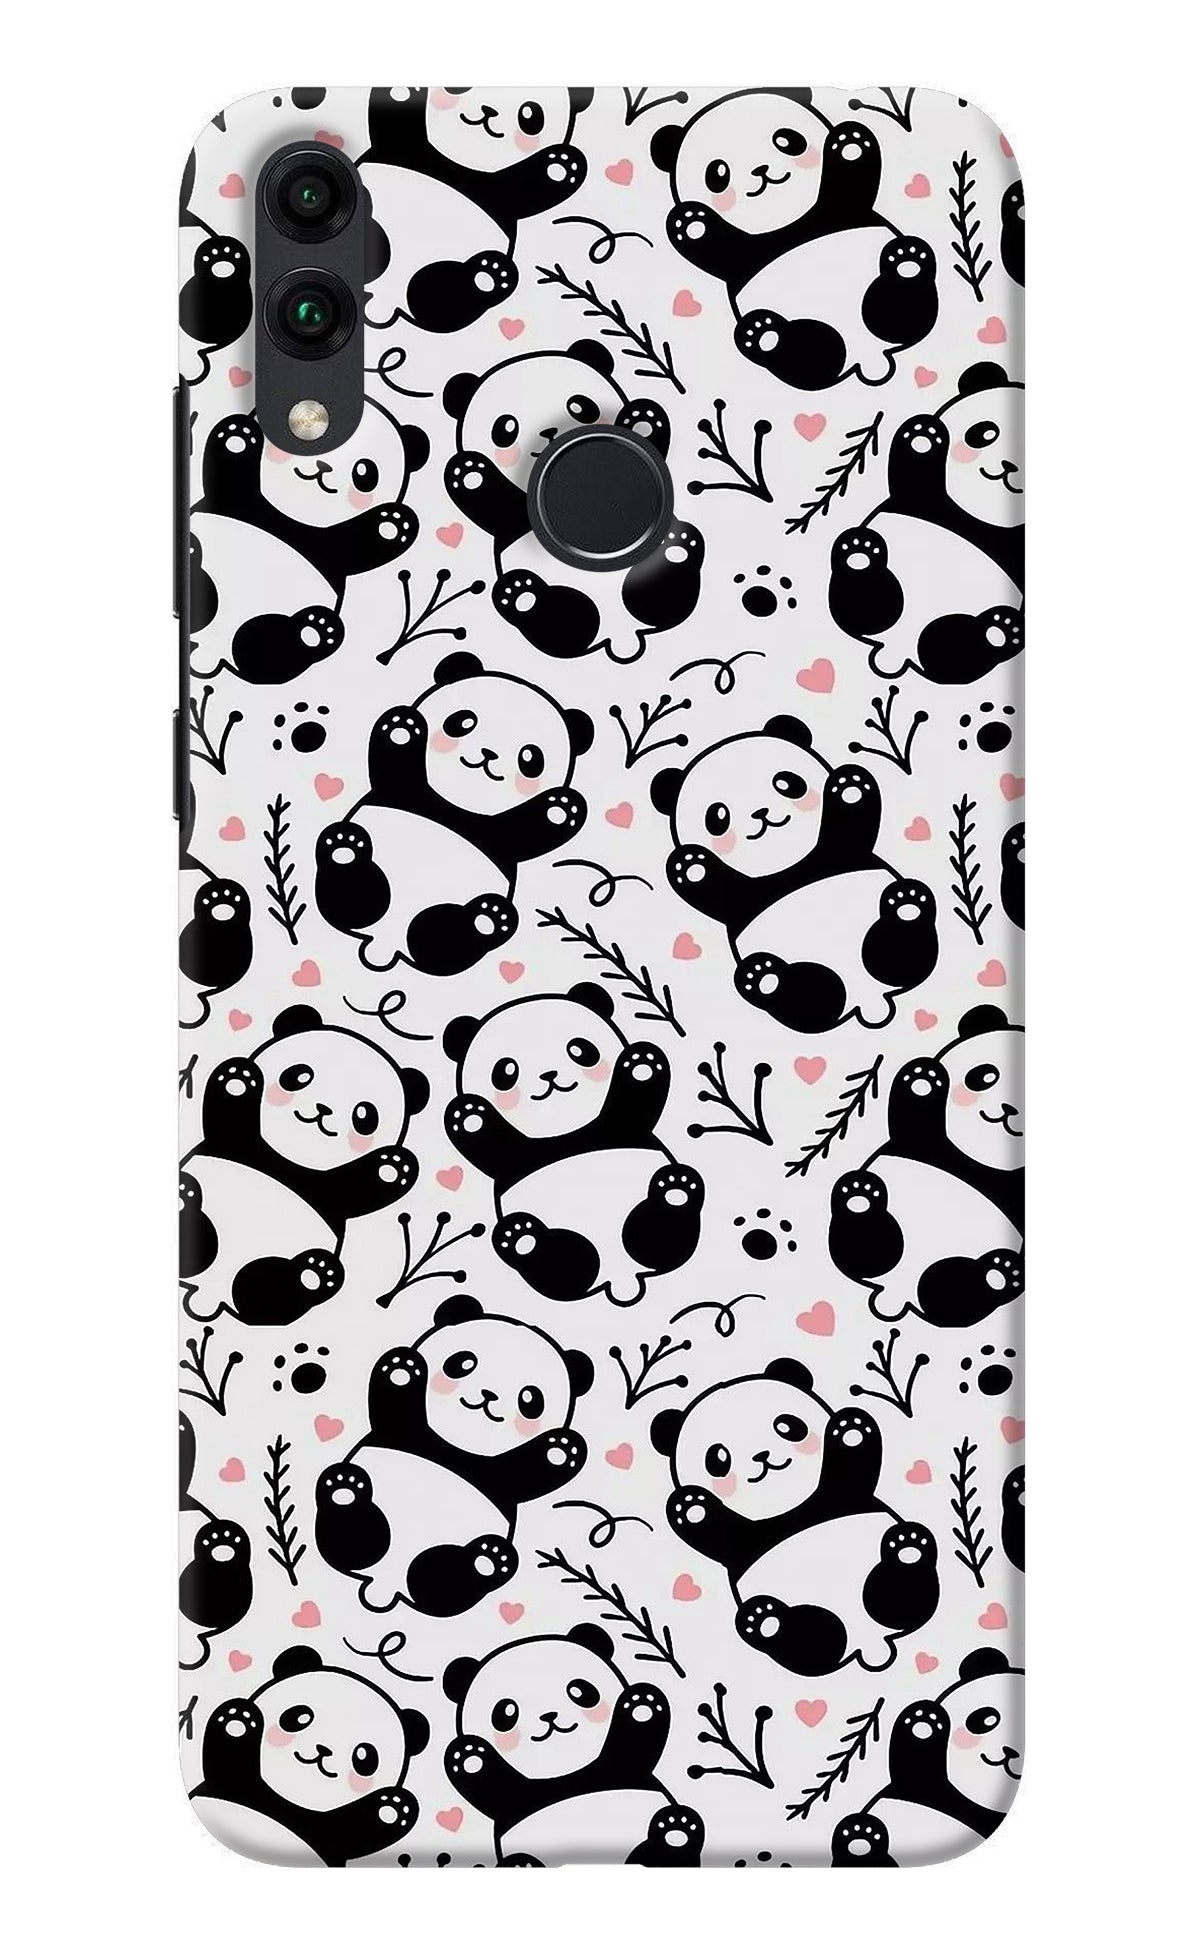 Cute Panda Honor 8C Back Cover